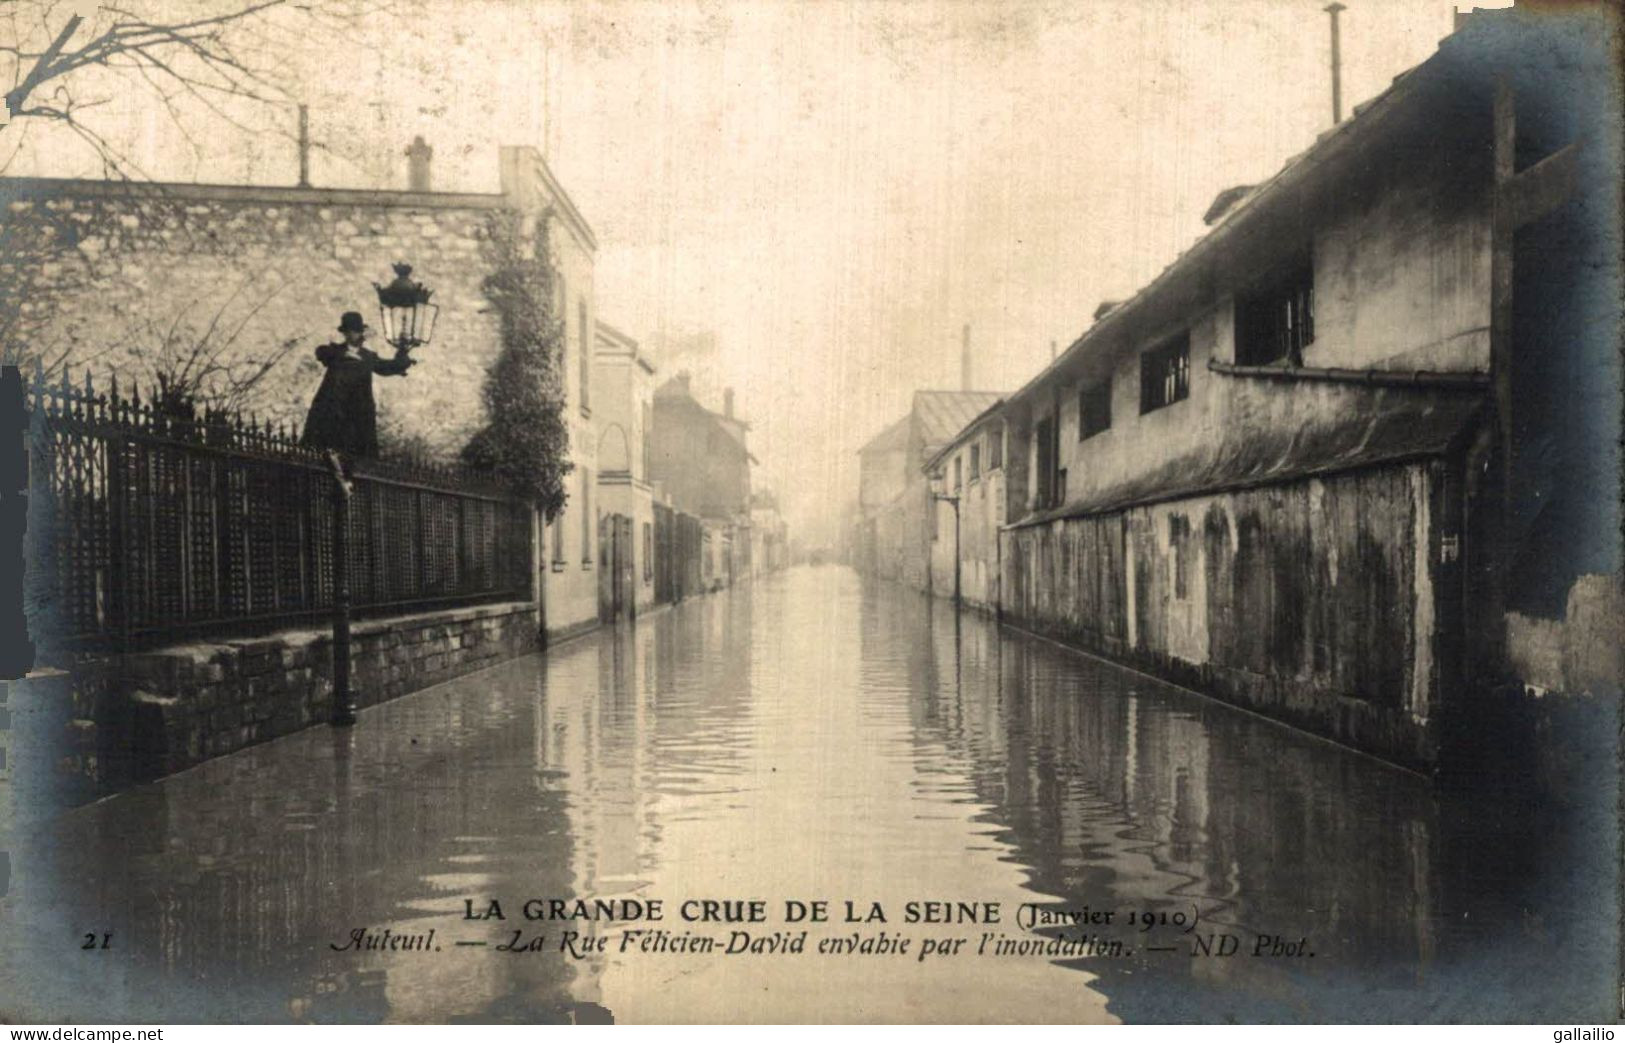 PARIS CRUE DE LA SEINE AUTEUIL LA RUE FELICIEN DAVID - Paris Flood, 1910